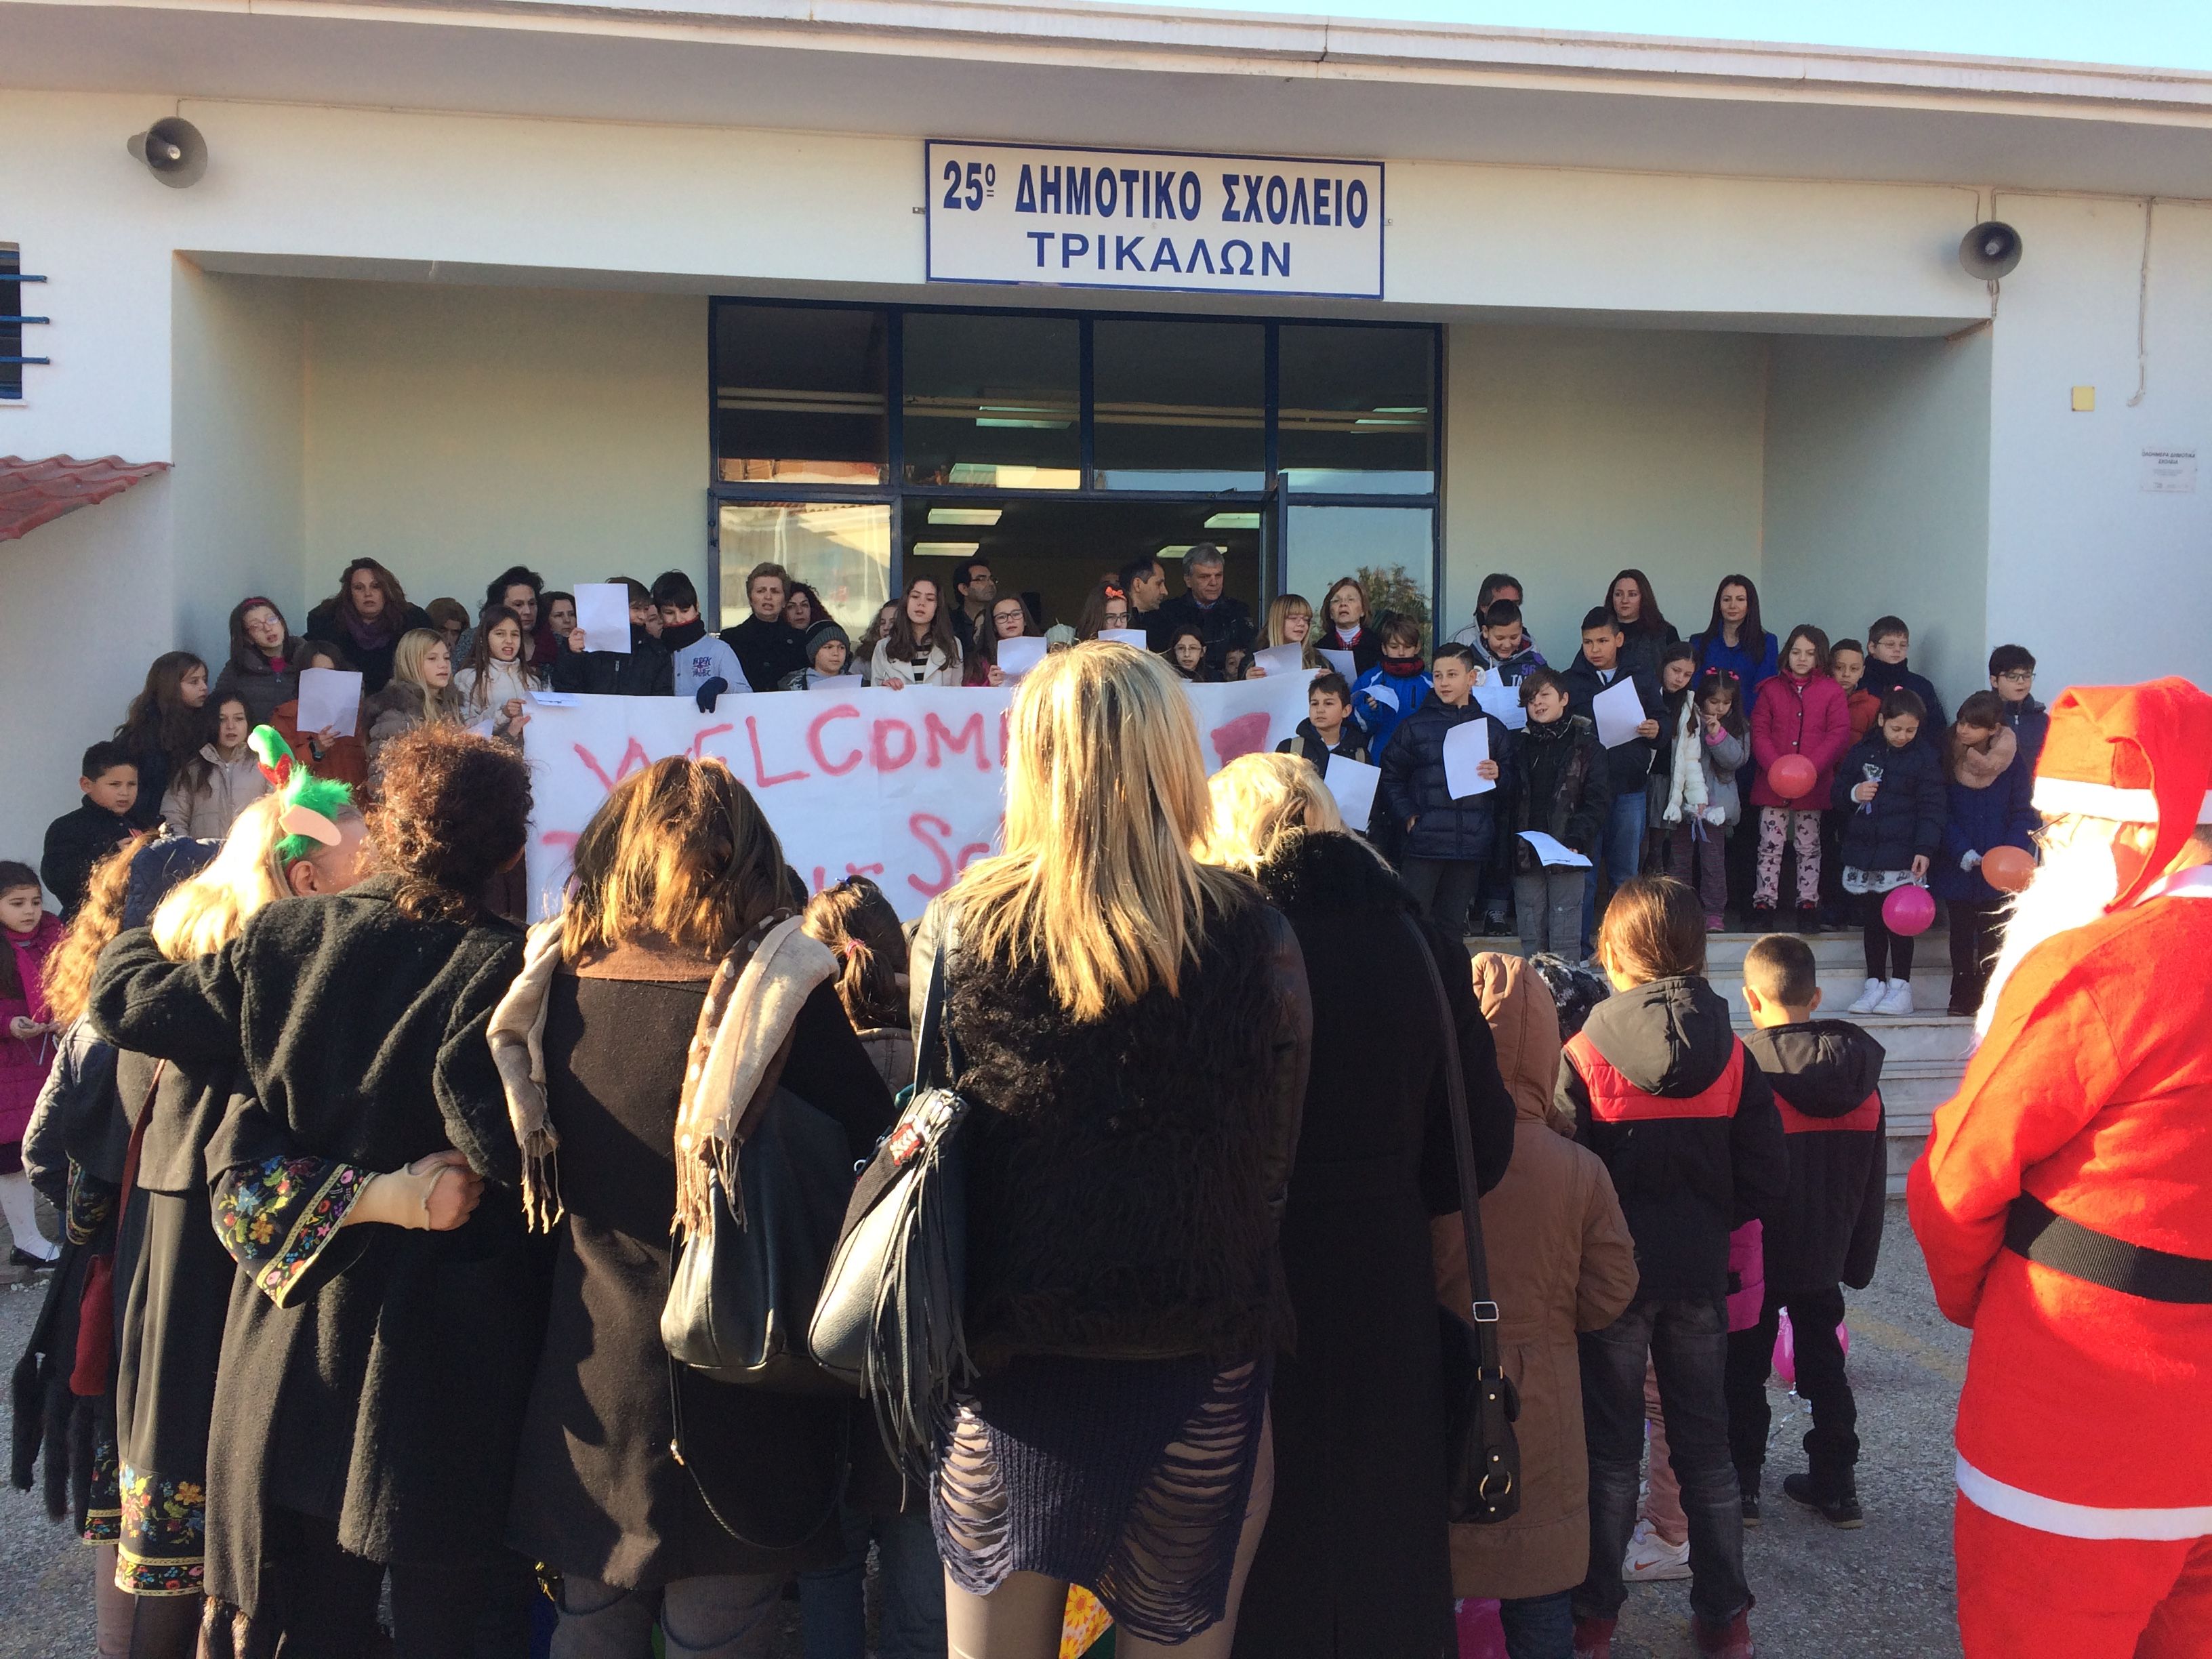 Το 25ο Δημοτικό Σχολείο Τρικάλων υποδέχθηκε τα προσφυγόπουλα